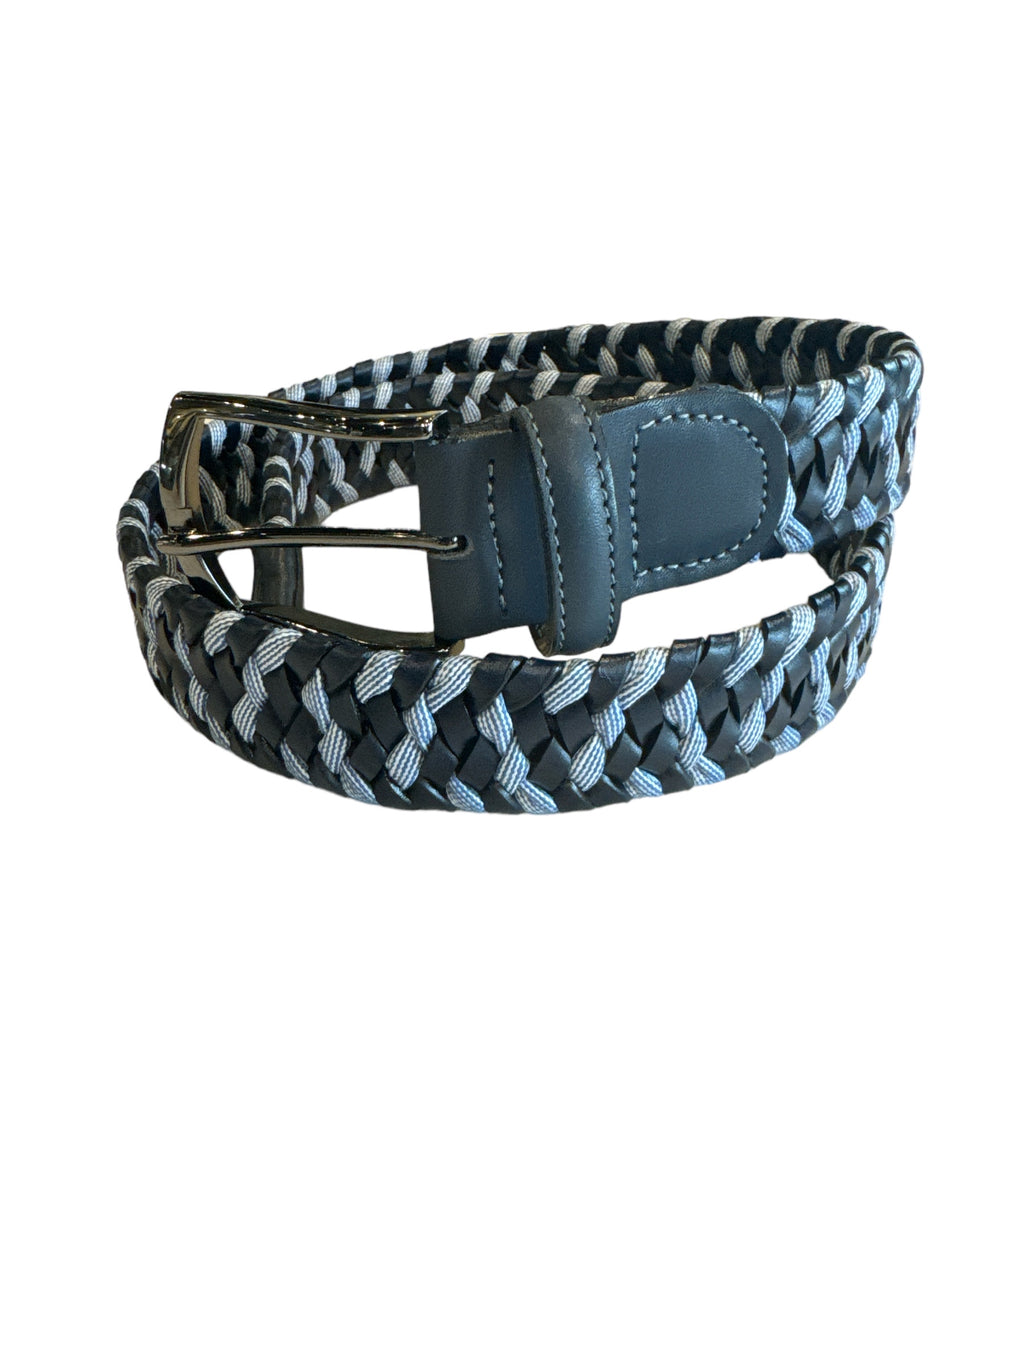 Bench Craft - Braided Belt - 6229-9 Navy